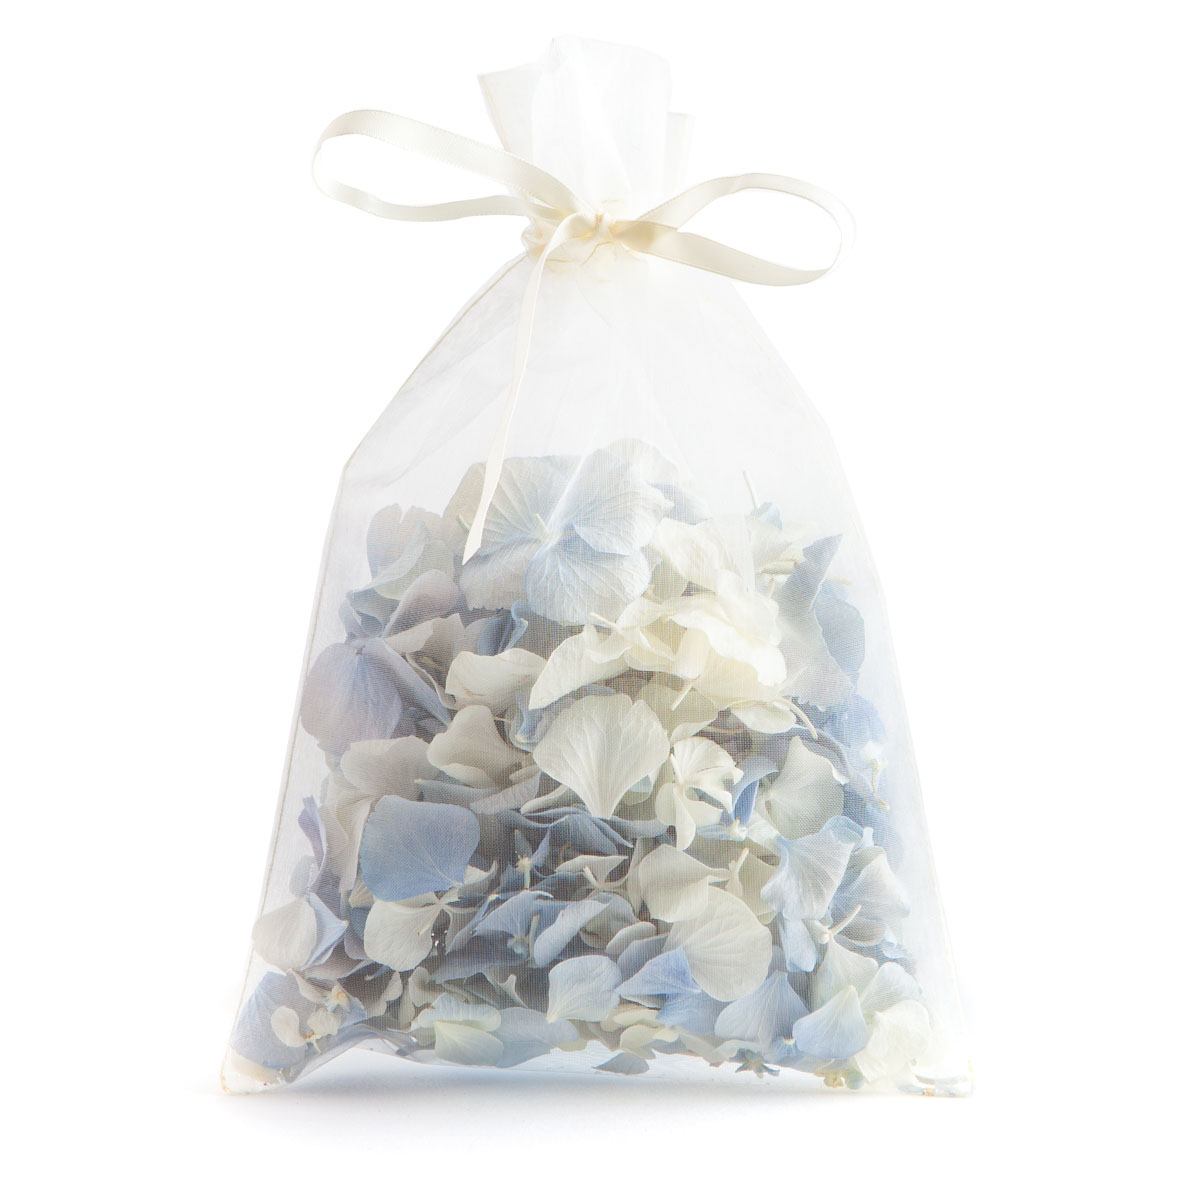 Biodegradable Confetti - Blue & White Hydrangea Petals - 10 Handful Bag